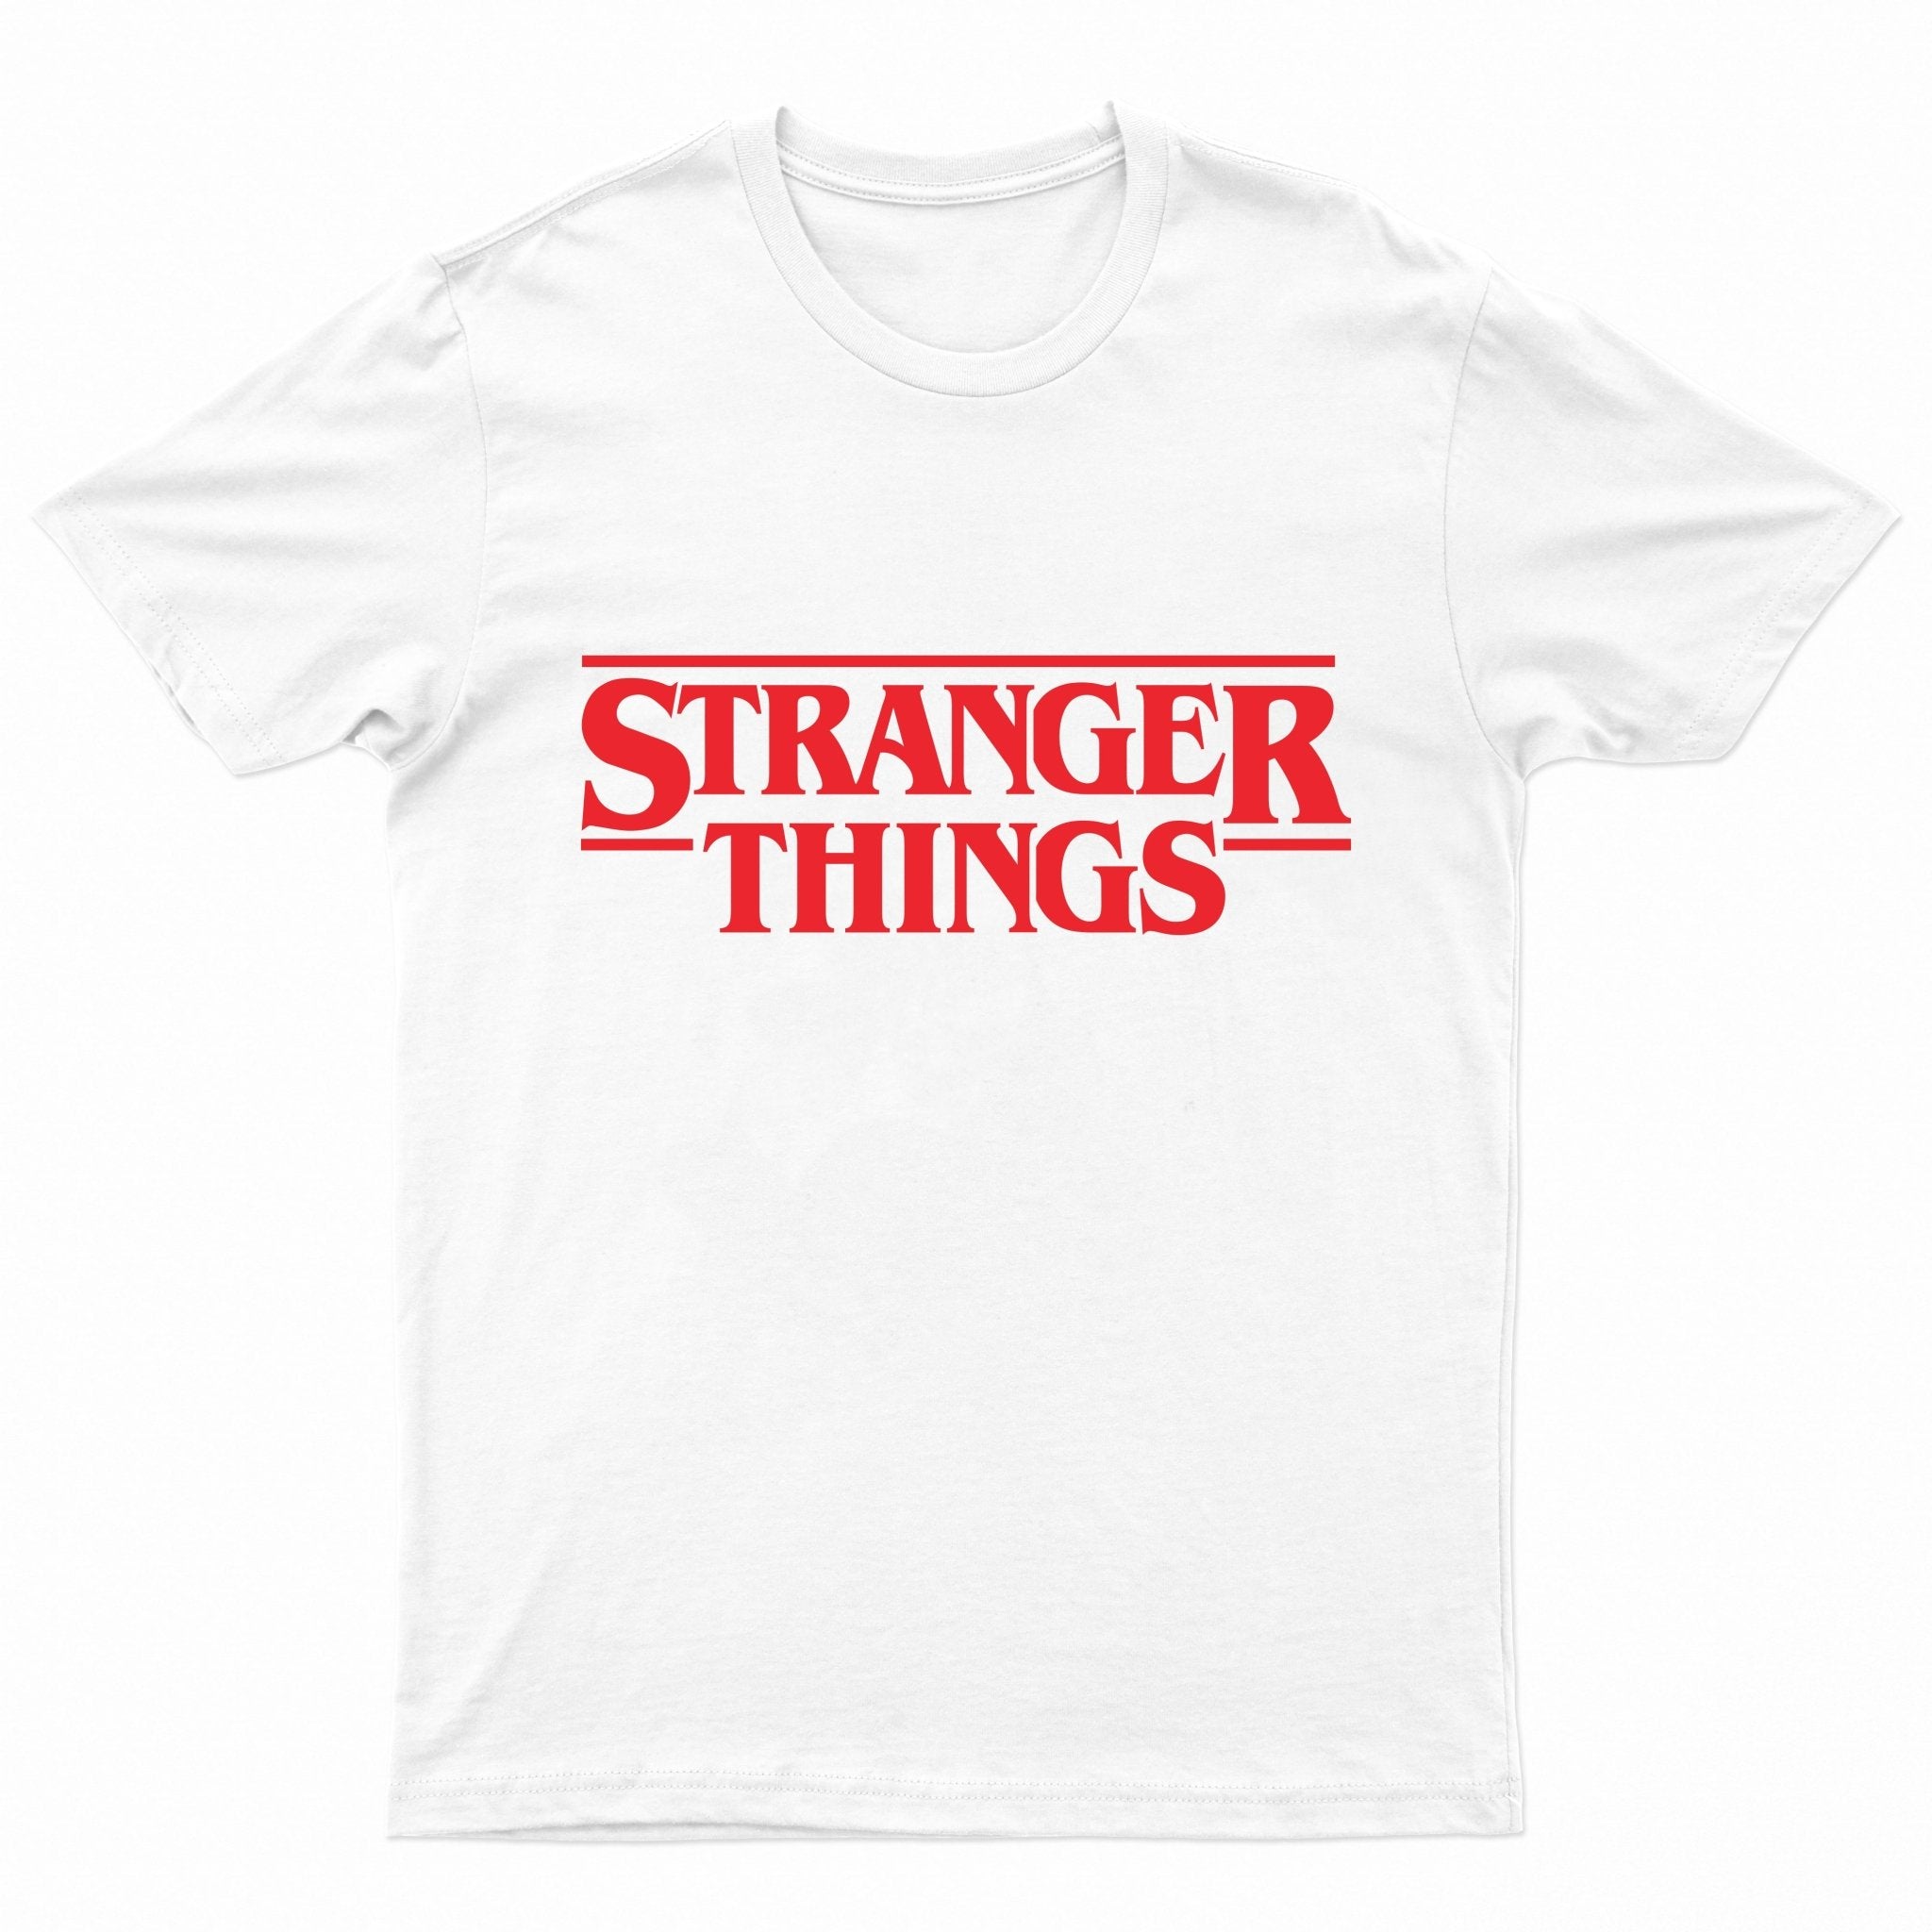 Paperboi Stranger Things T-shirt - White - قميص - Store 974 | ستور ٩٧٤